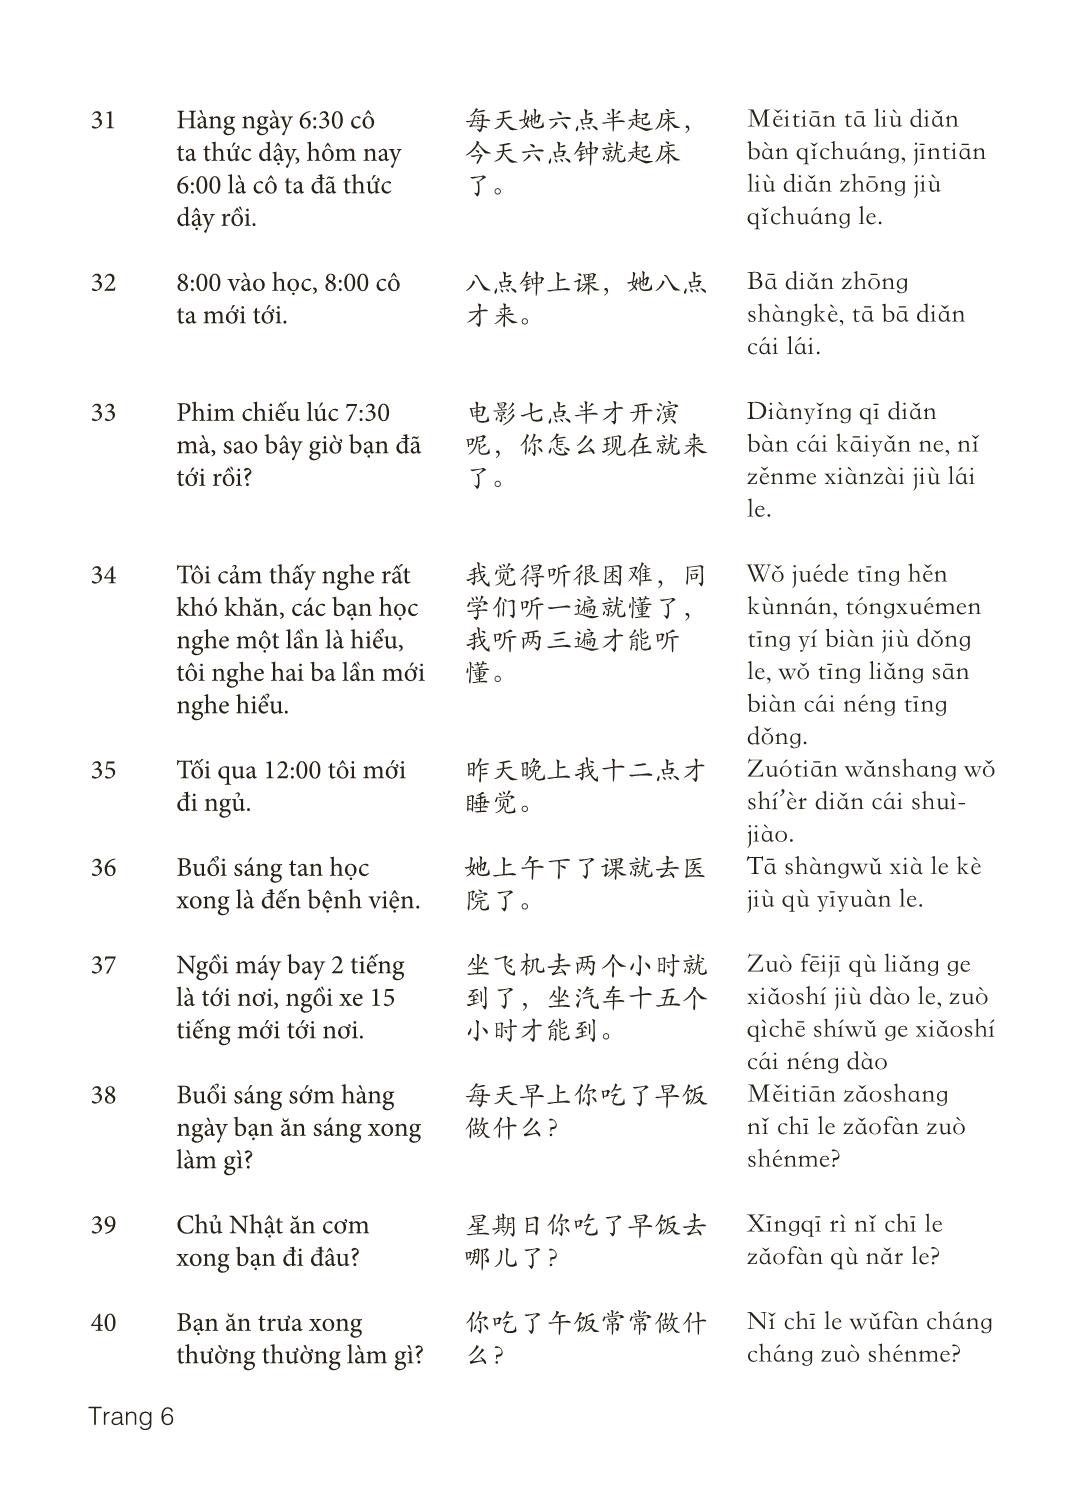 3000 Câu đàm thoại tiếng Hoa - Phần 11 trang 6